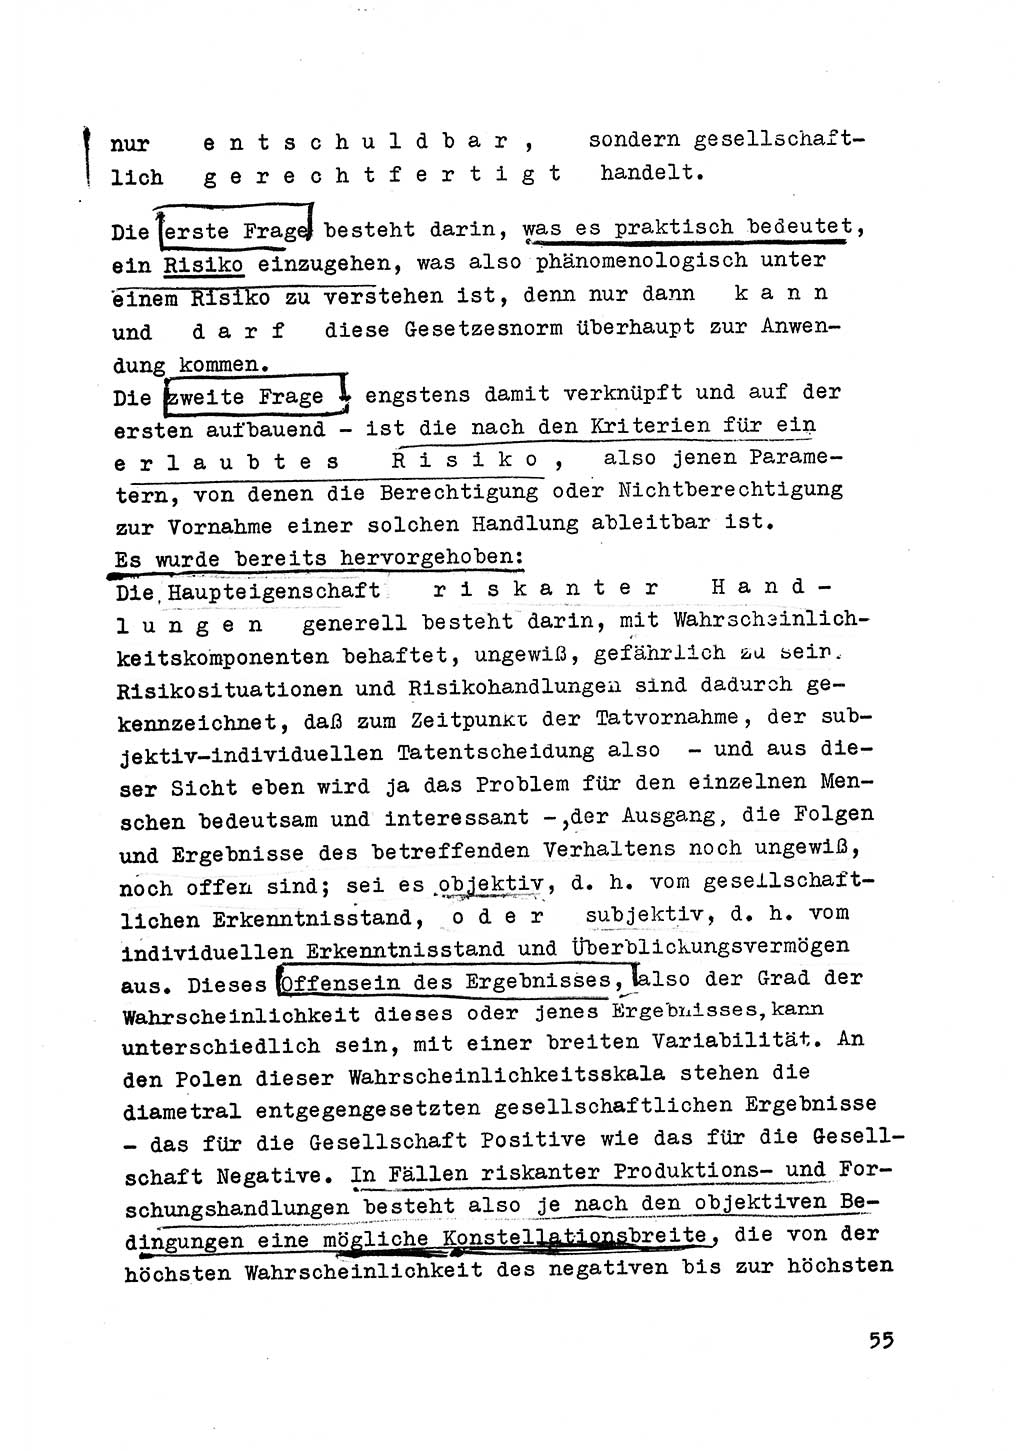 Strafrecht der DDR (Deutsche Demokratische Republik), Besonderer Teil, Lehrmaterial, Heft 6 1970, Seite 55 (Strafr. DDR BT Lehrmat. H. 6 1970, S. 55)